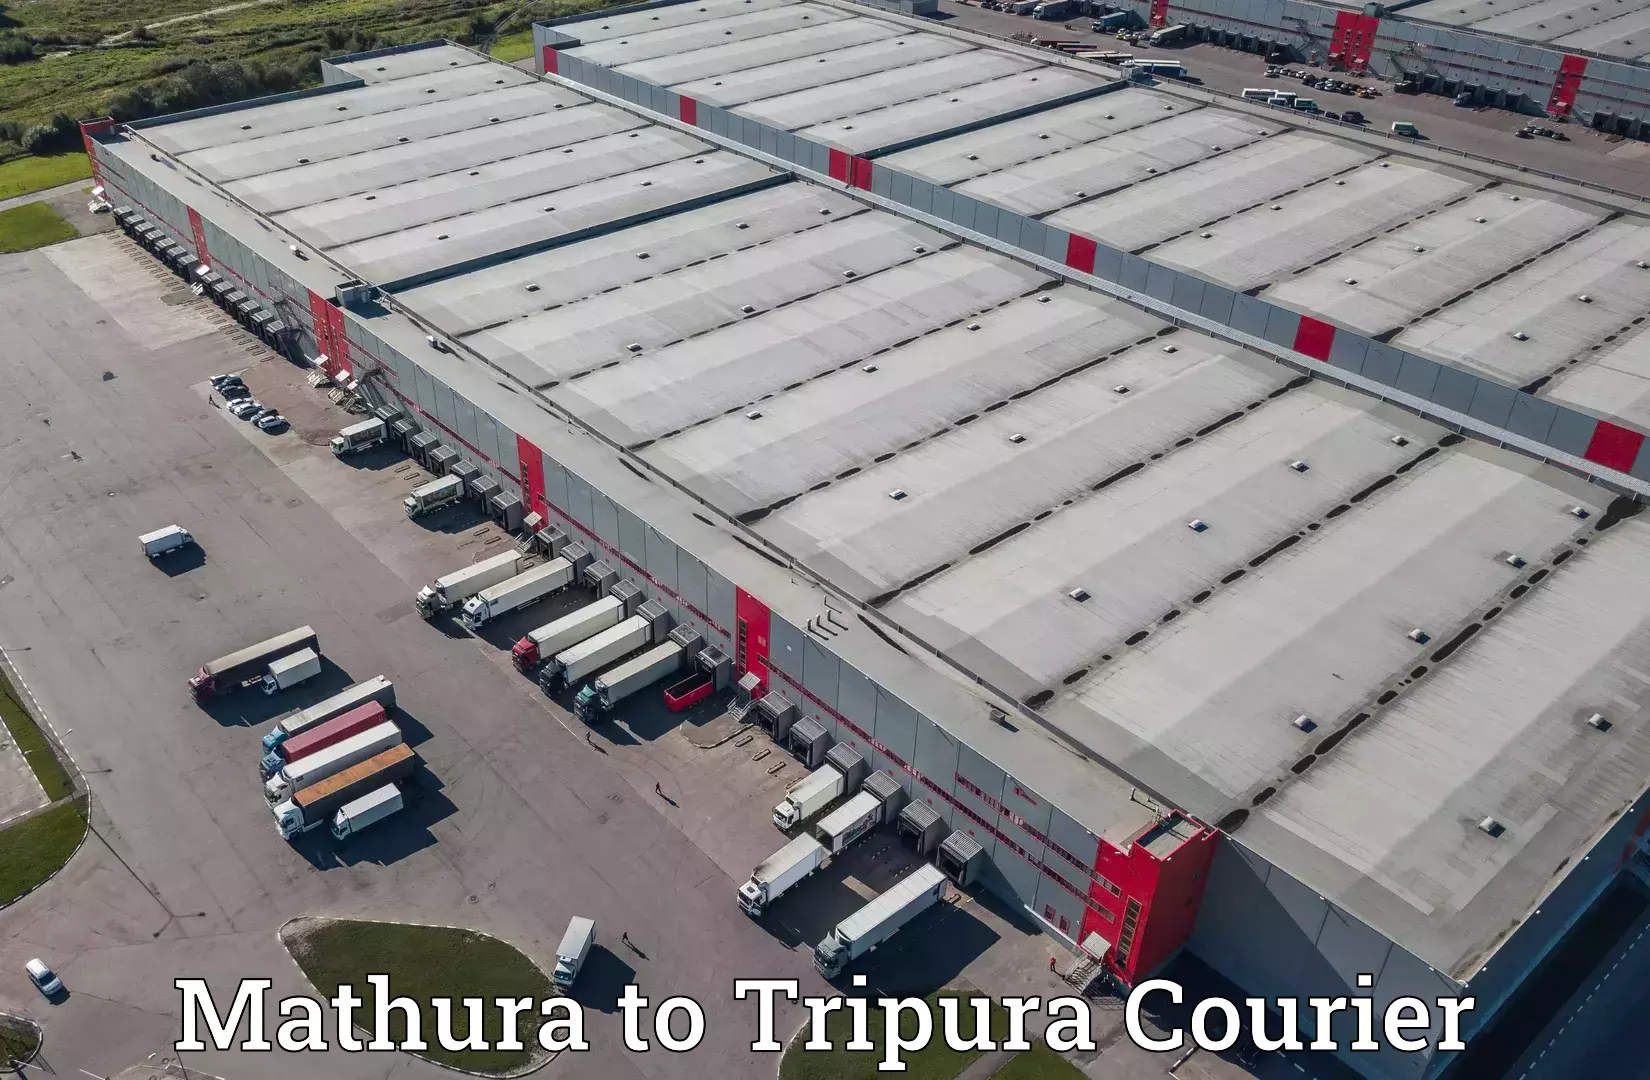 Courier service comparison Mathura to Amarpur